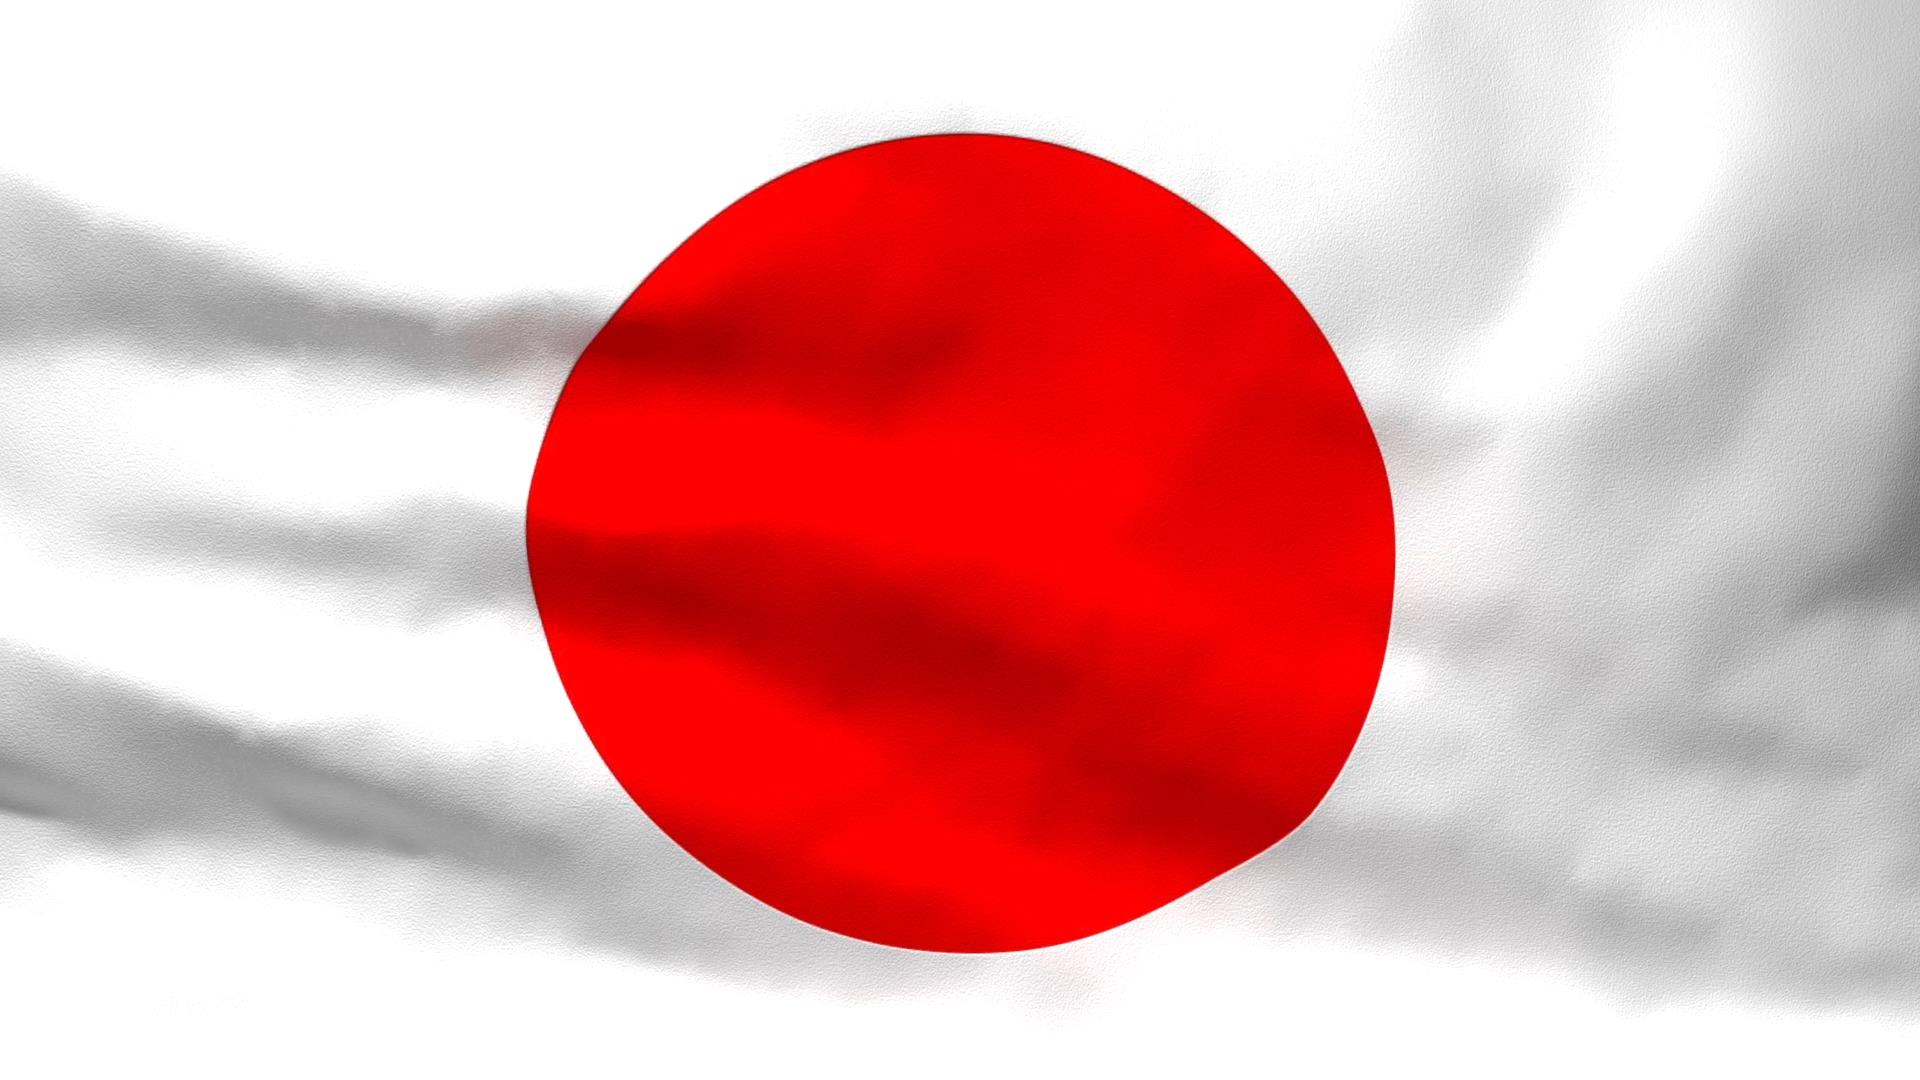 Lá cờ Nhật Bản: Lá cờ Nhật Bản với hình chữ Hán vàng trên nền đỏ đem lại cảm giác kiêu hãnh và tự hào cho người Nhật. Lá cờ này là biểu tượng của tinh thần Samurai và sự tự lập của đất nước này. Đừng bỏ lỡ cơ hội để khám phá hình ảnh lá cờ Nhật Bản và hiểu thêm về lịch sử và văn hóa của quốc gia này.